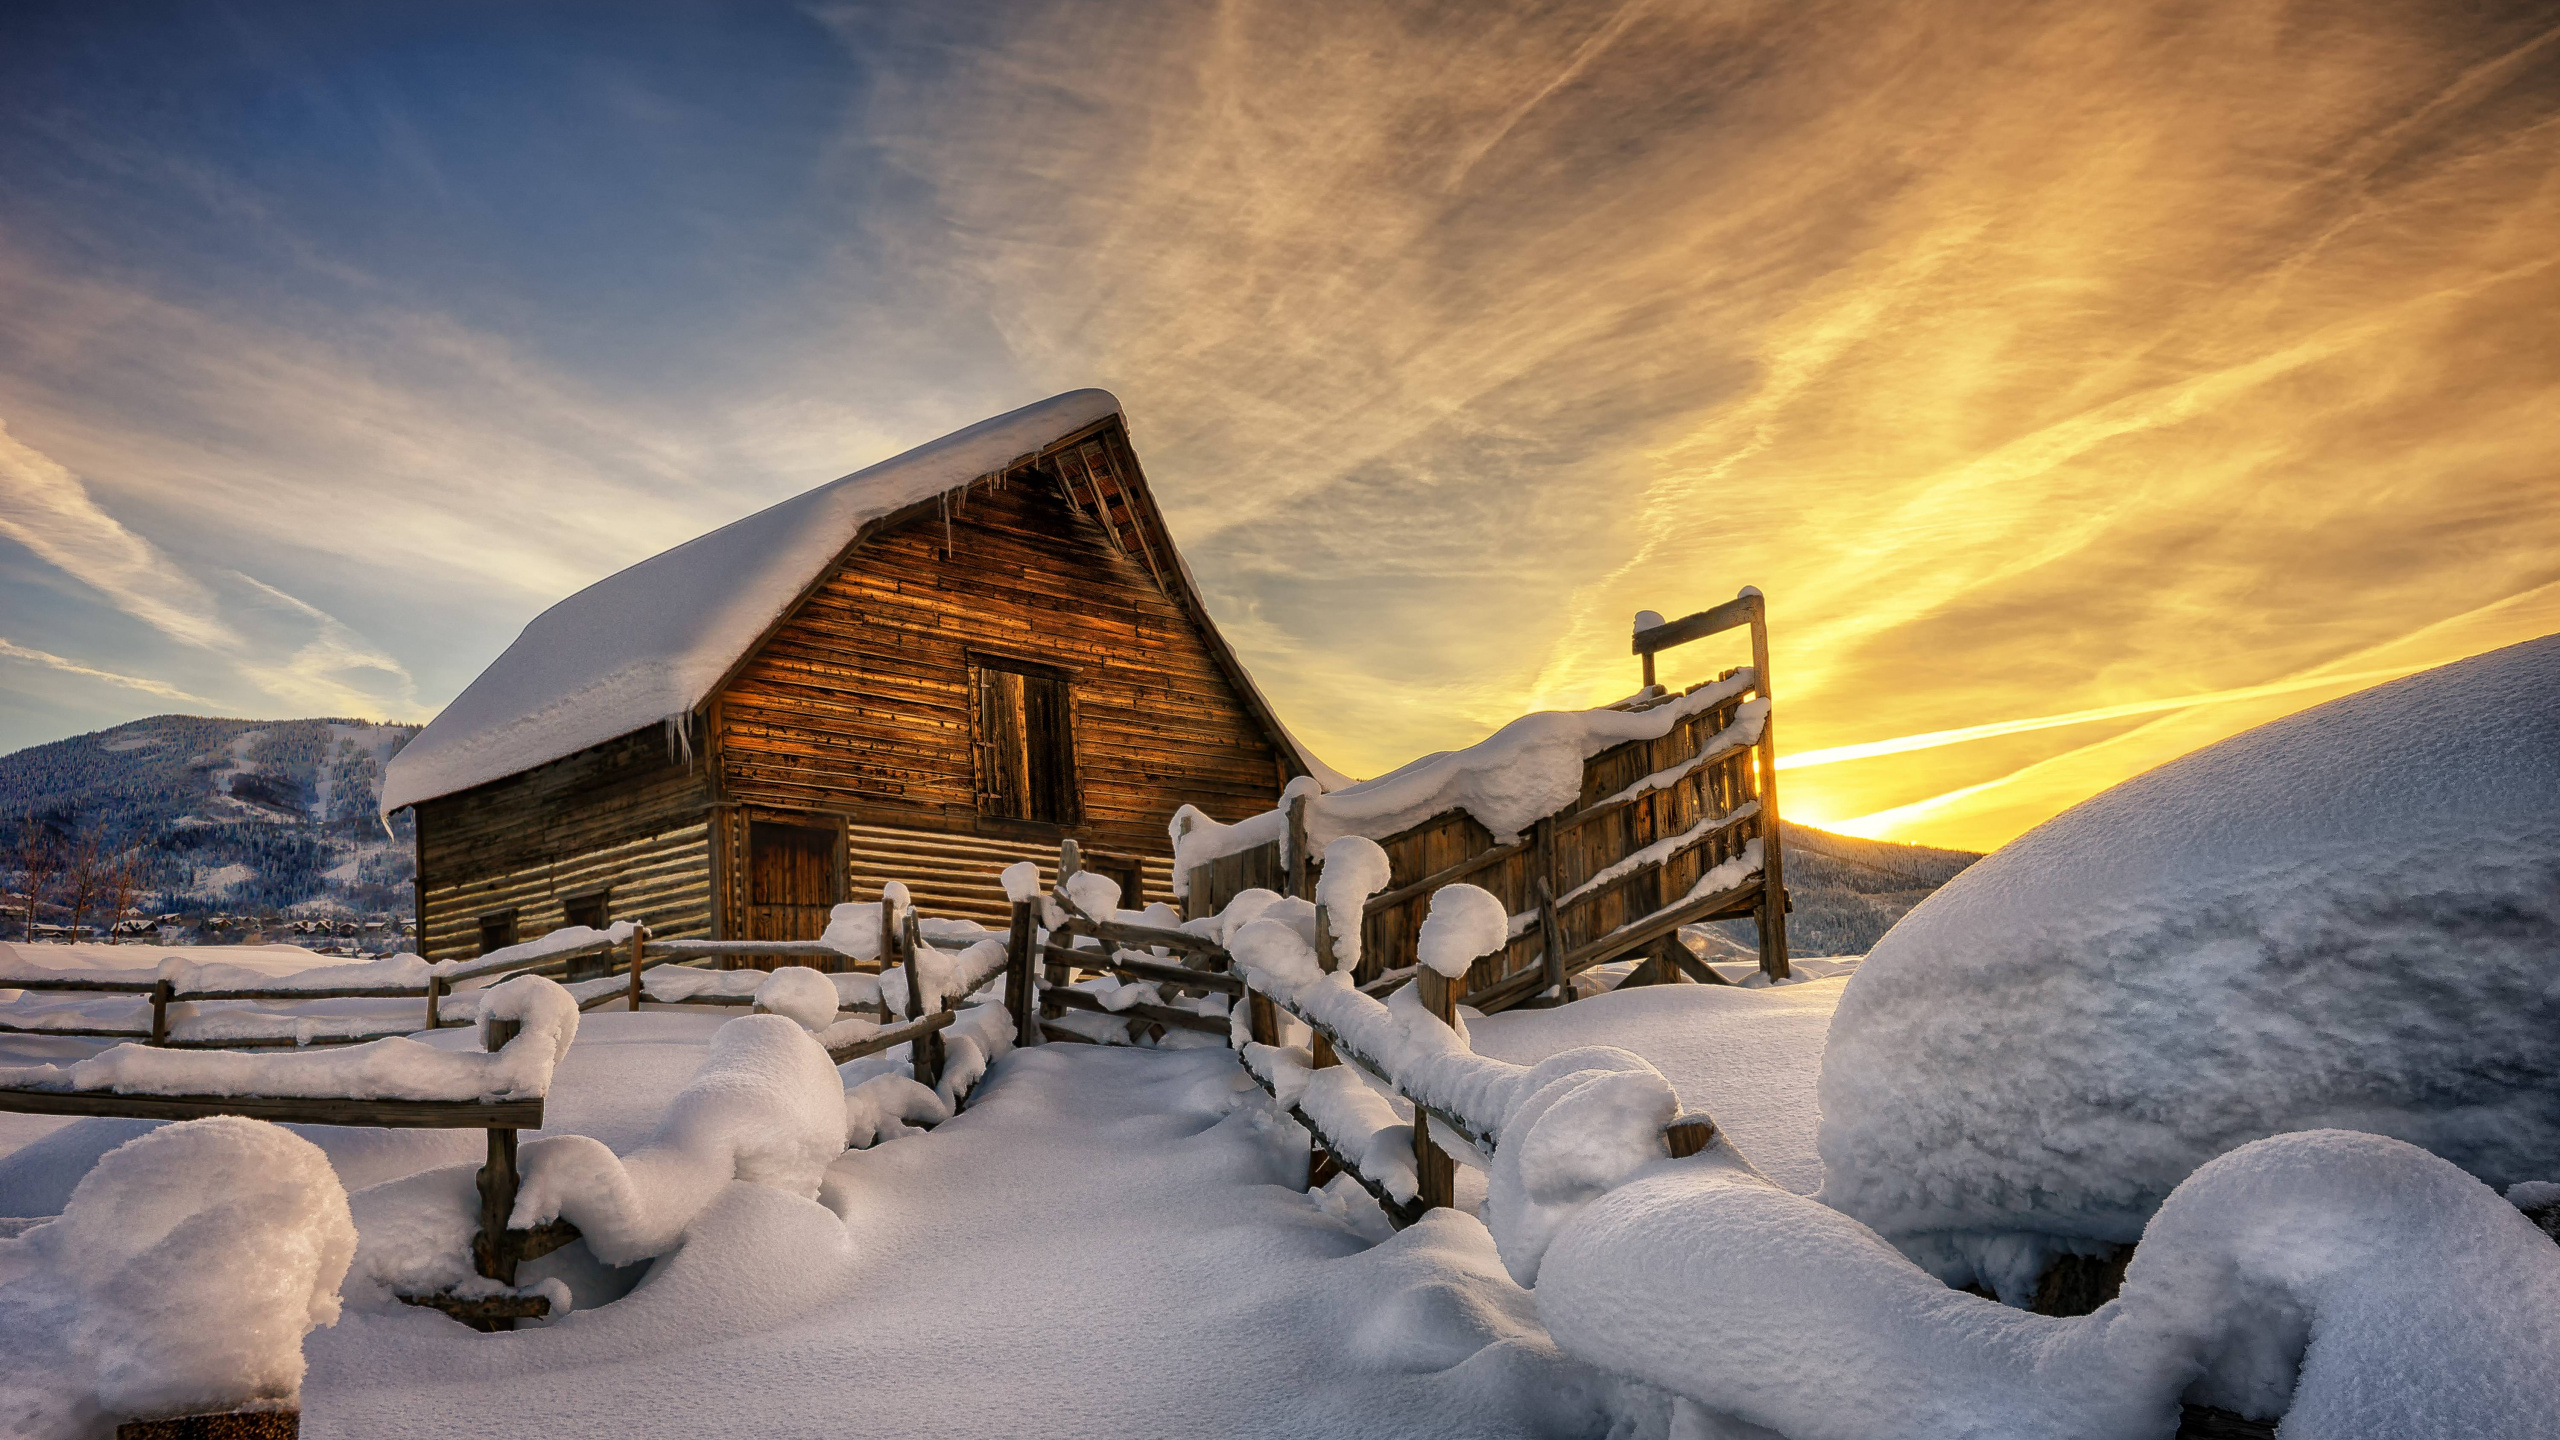 Braunes Holzhaus Mit Schnee Bedeckt Unter Bewölktem Himmel. Wallpaper in 2560x1440 Resolution